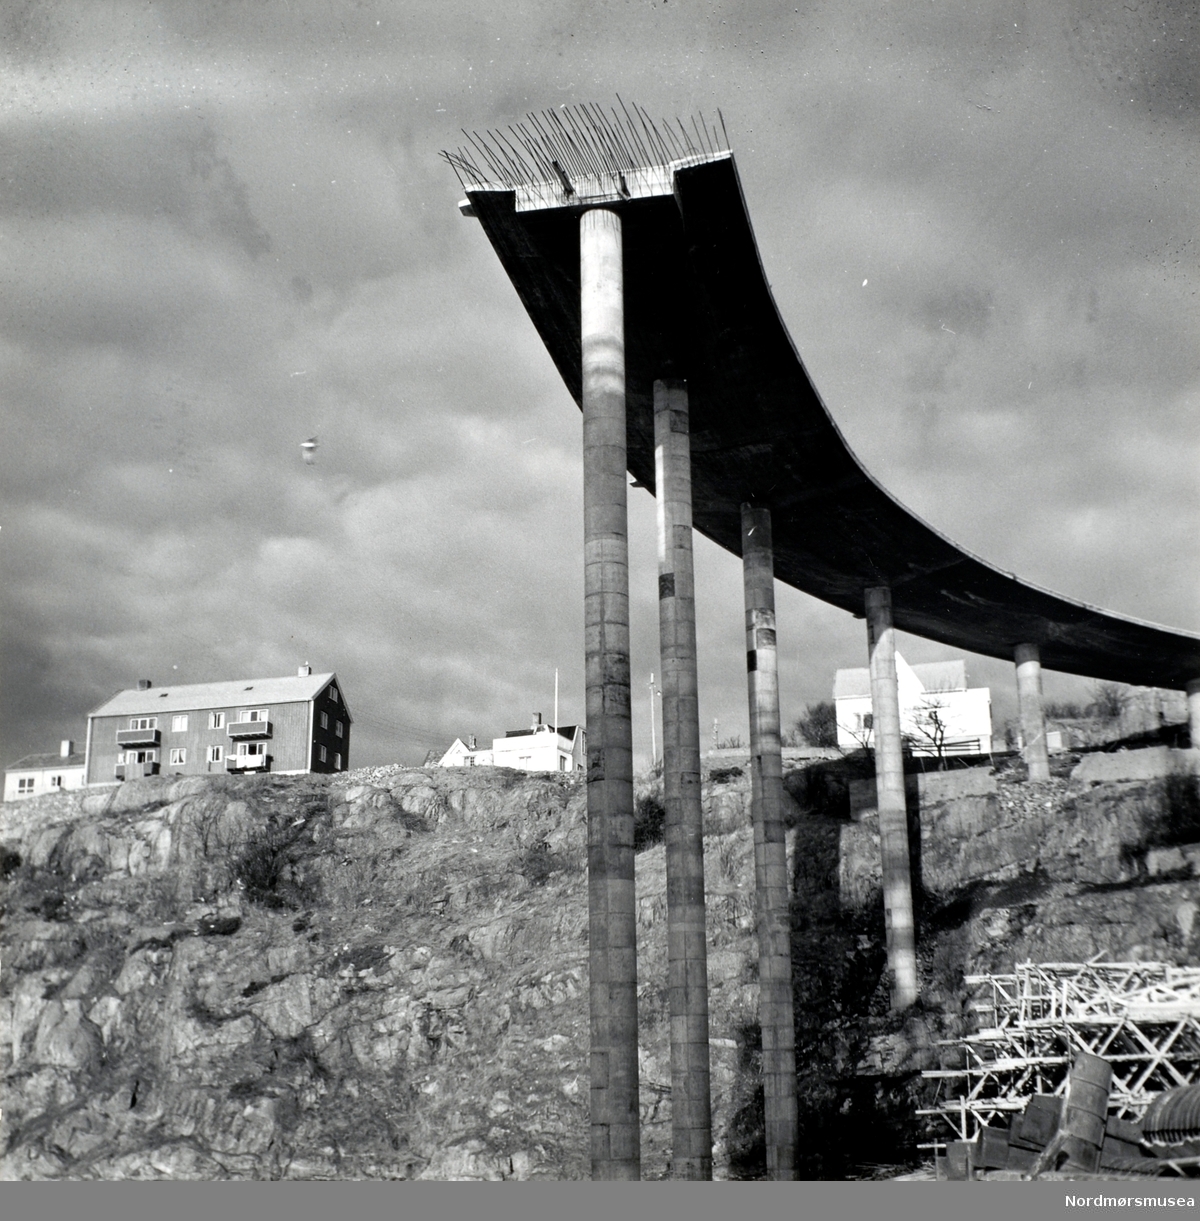 Foto fra byggingen av Sørsundbroen. Broen vil bli omkring 408 meter lang og 9,3 meter bred, med en fri høyde over vannet på omkring 39,6 meter. Broen vil veie bort i mot 10.000 tonn når den er ferdigbygd. Det er circa 50 meter mellom pilarene med 100 meter på det meste midt på, samt beregnet til et akseltrykk på 10 tonn. Broen stod ferdig omkring sommeren 1963.  Entreprenør var Vestlandsbygg A/S, og arbeidet ledes av firmaets sjef (per 17.02.62), sivilingeniør H. Nafstad. Kilde: Avis. Nordmørsposten eller Romsdalsposten? Lørdag 17. februar 1962. Fra Nordmøre museums fotosamlinger.